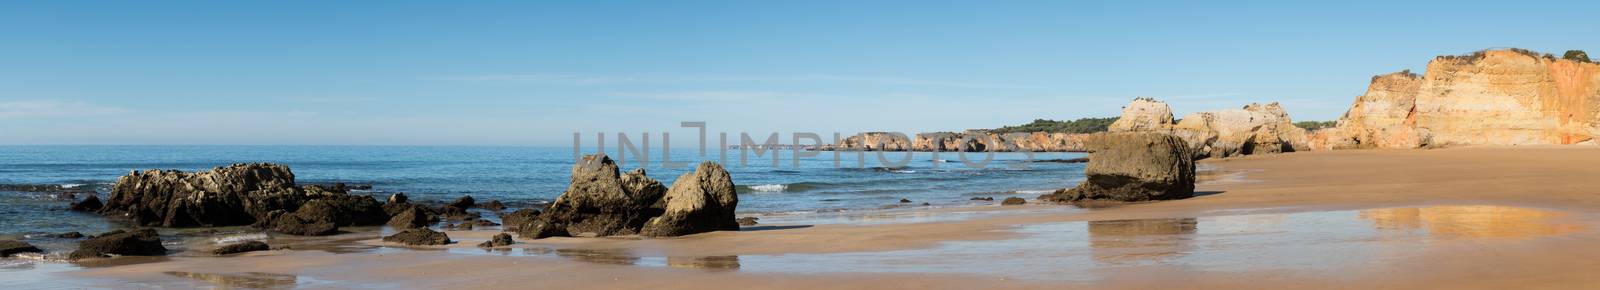 Praia da Rocha in Portimao, Algarve by homydesign